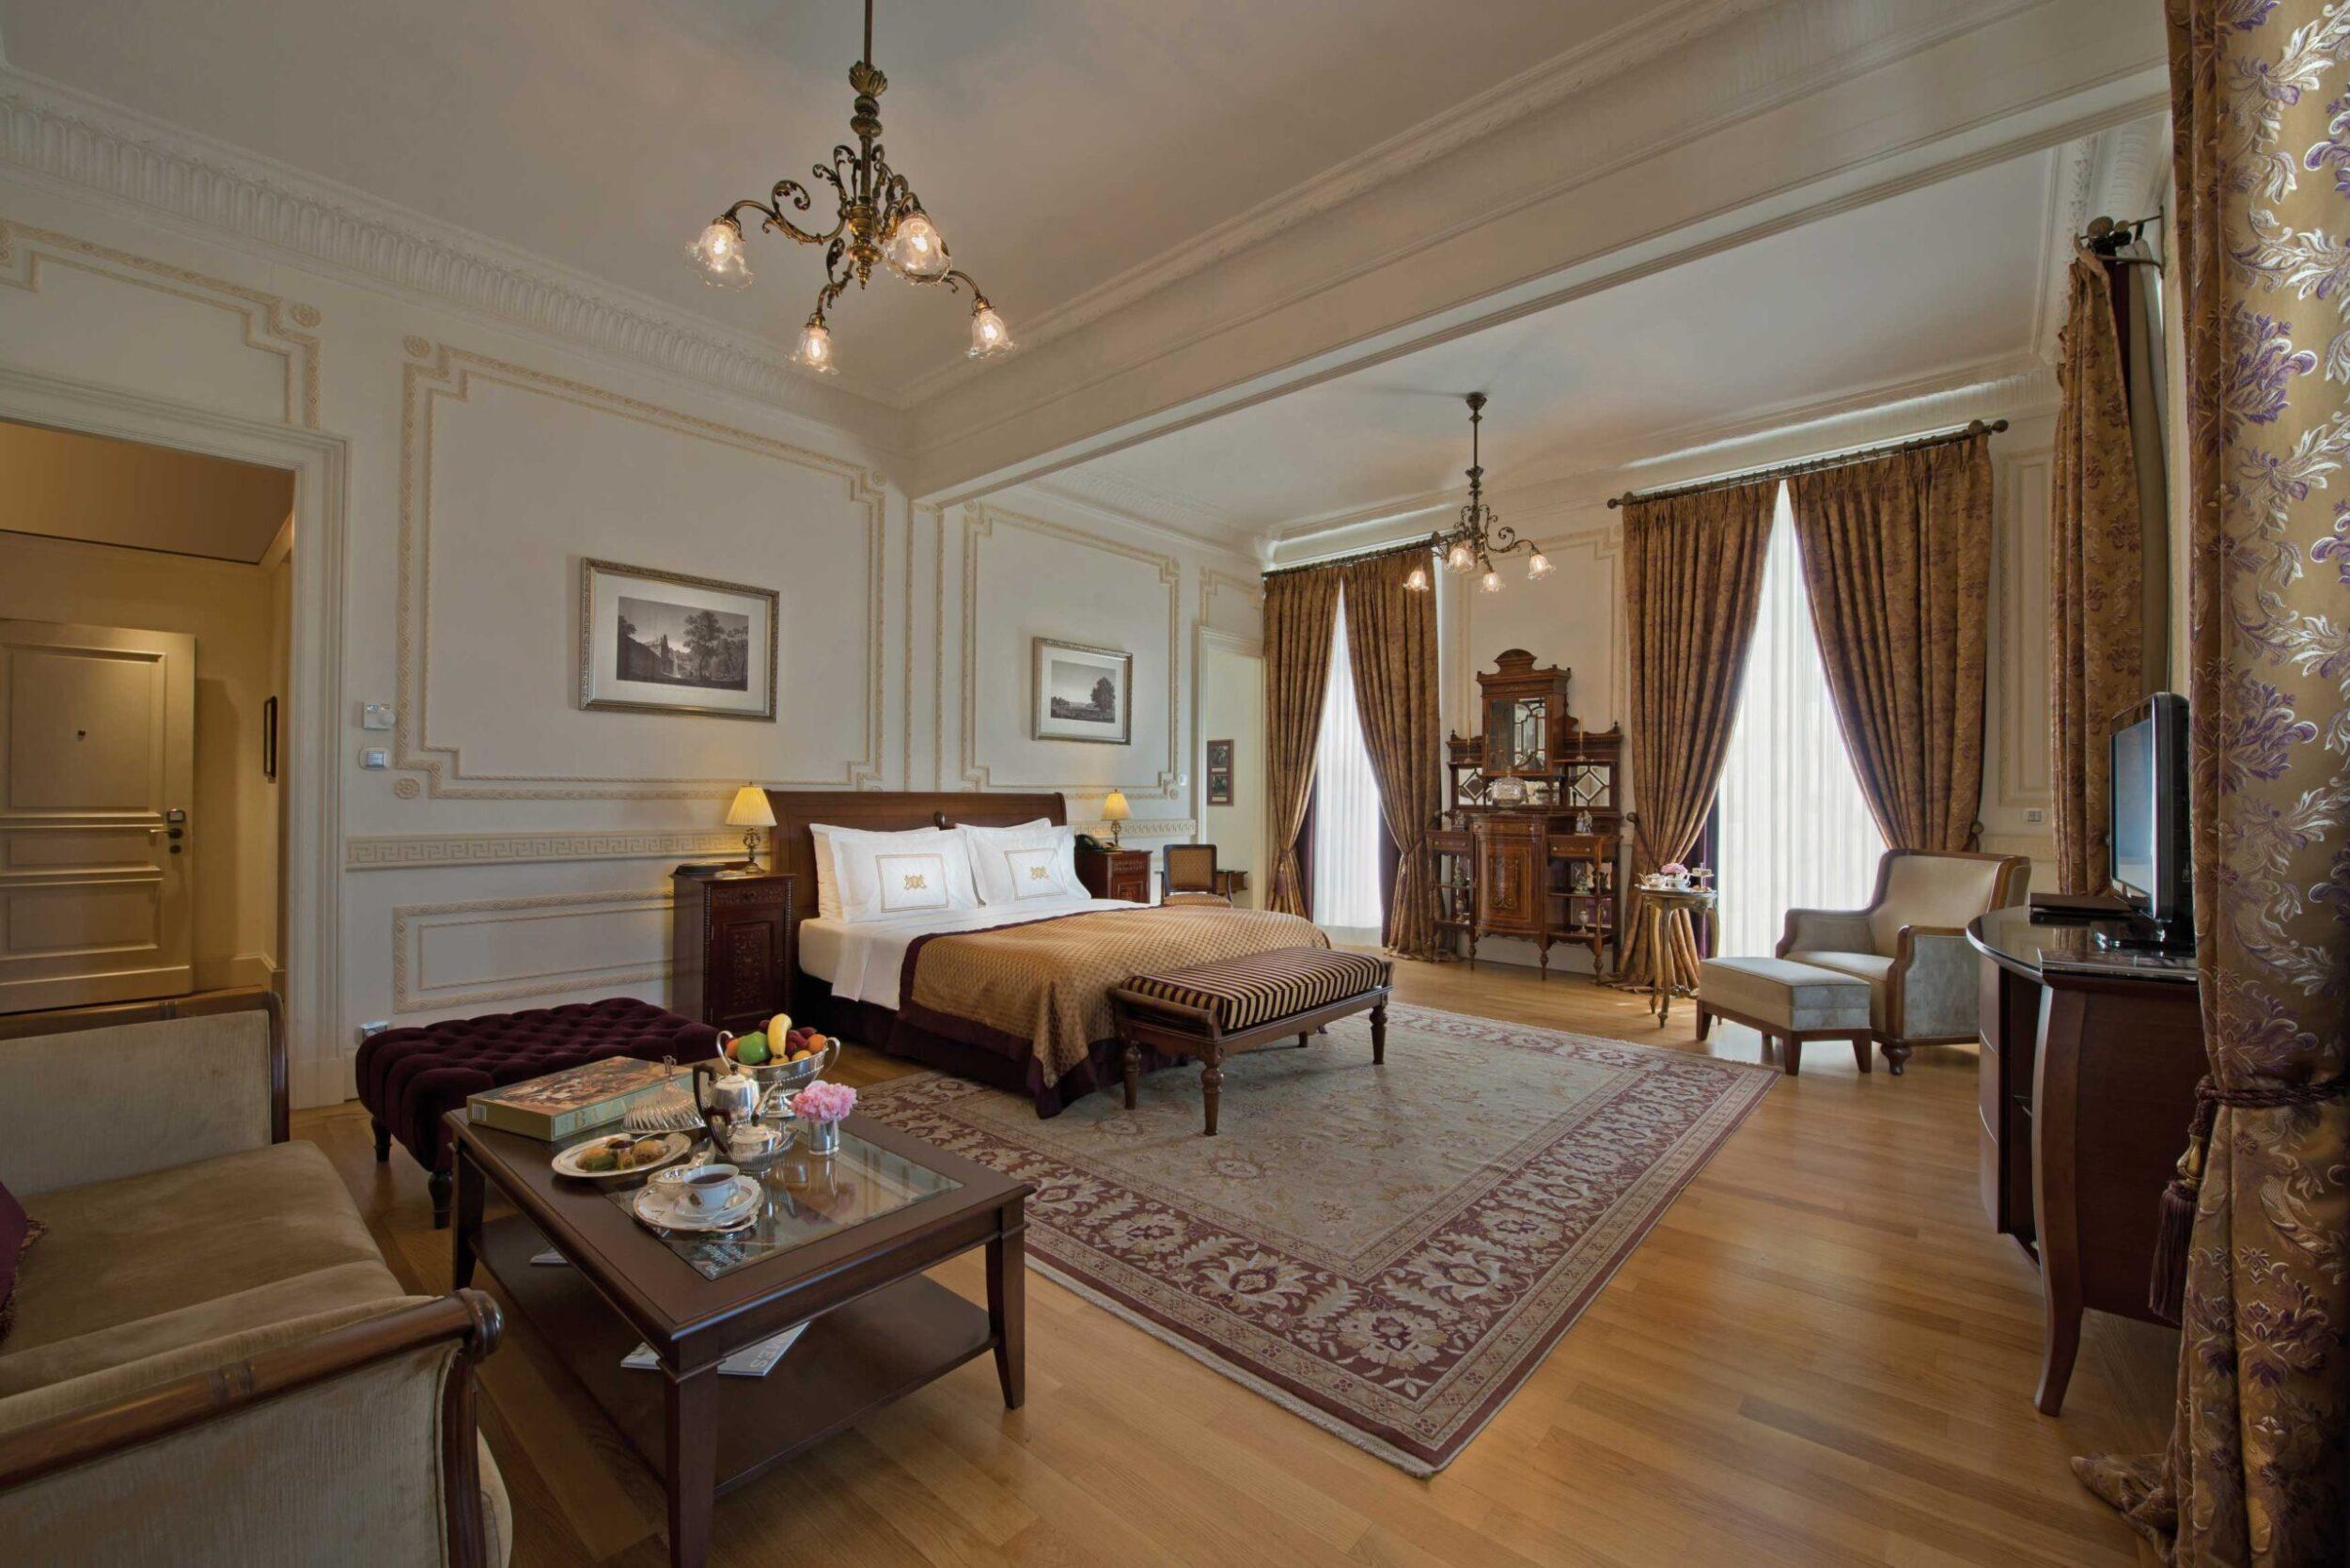 Palace hotel стамбула. Отель Pera Palace в Стамбуле. Pera Palace Hotel Jumeirah. Отель Pera Palace в Стамбуле номера.